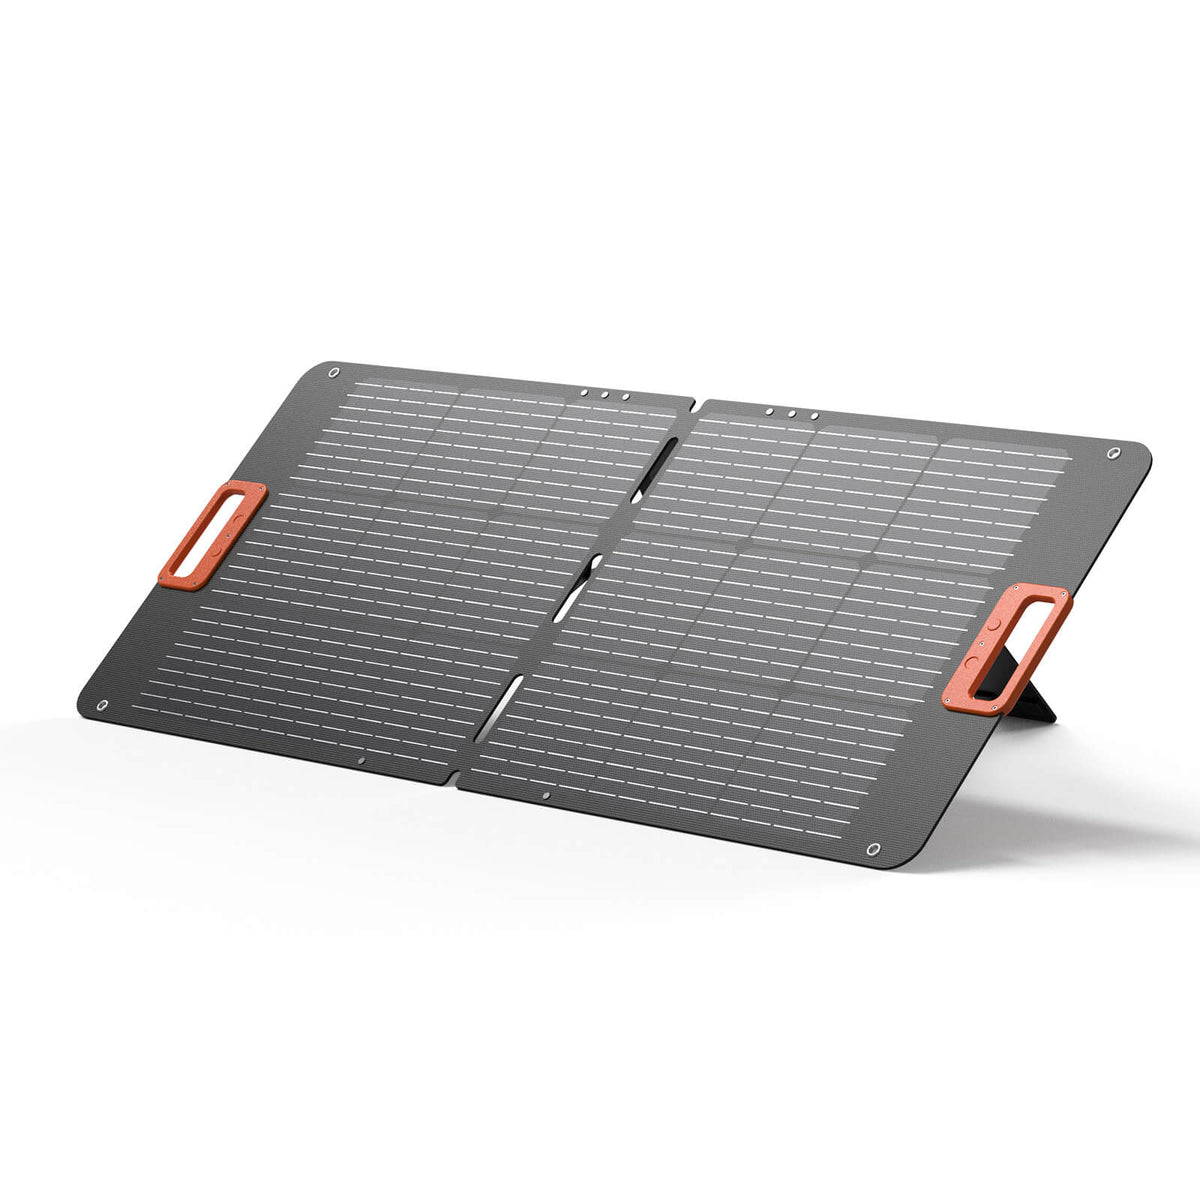 Panneau solaire portable LiTime 100W